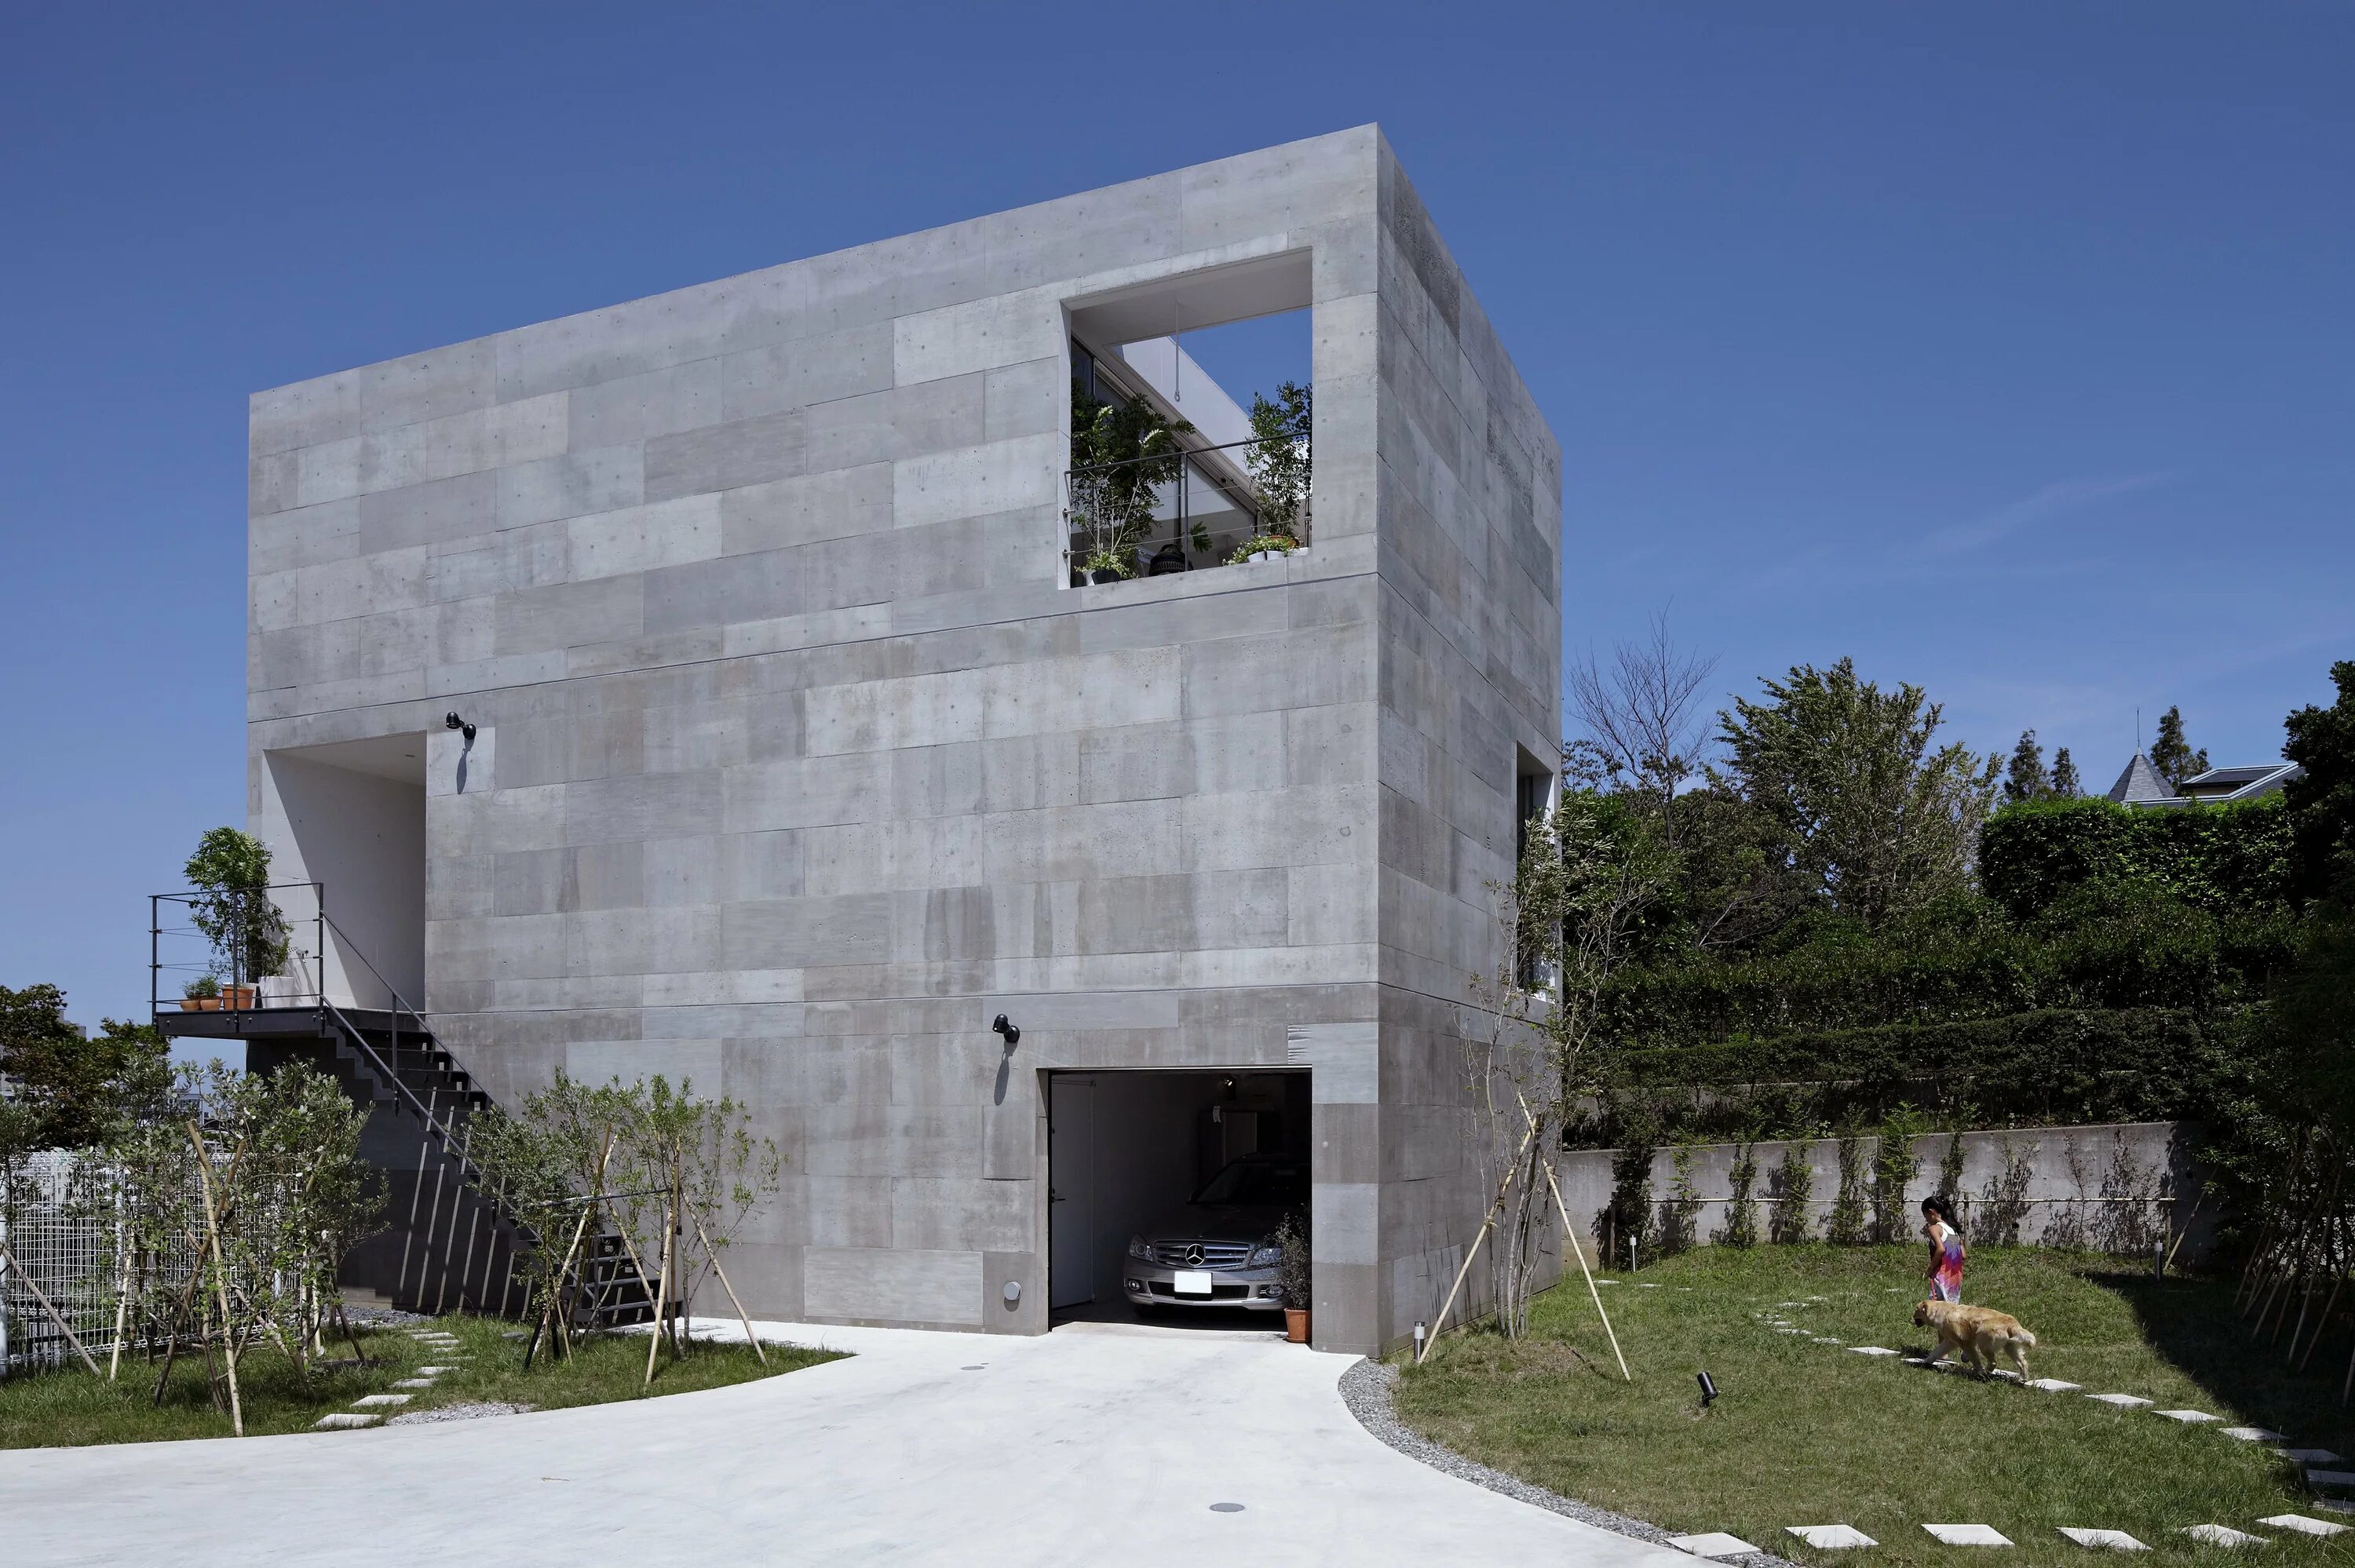 Бетонный домик. Бетонный дом (Concrete House) Марии Кастелло и Хосе Антонио Молина. Здание из бетона. Монолитный бетонный дом. Архитектурный бетон.